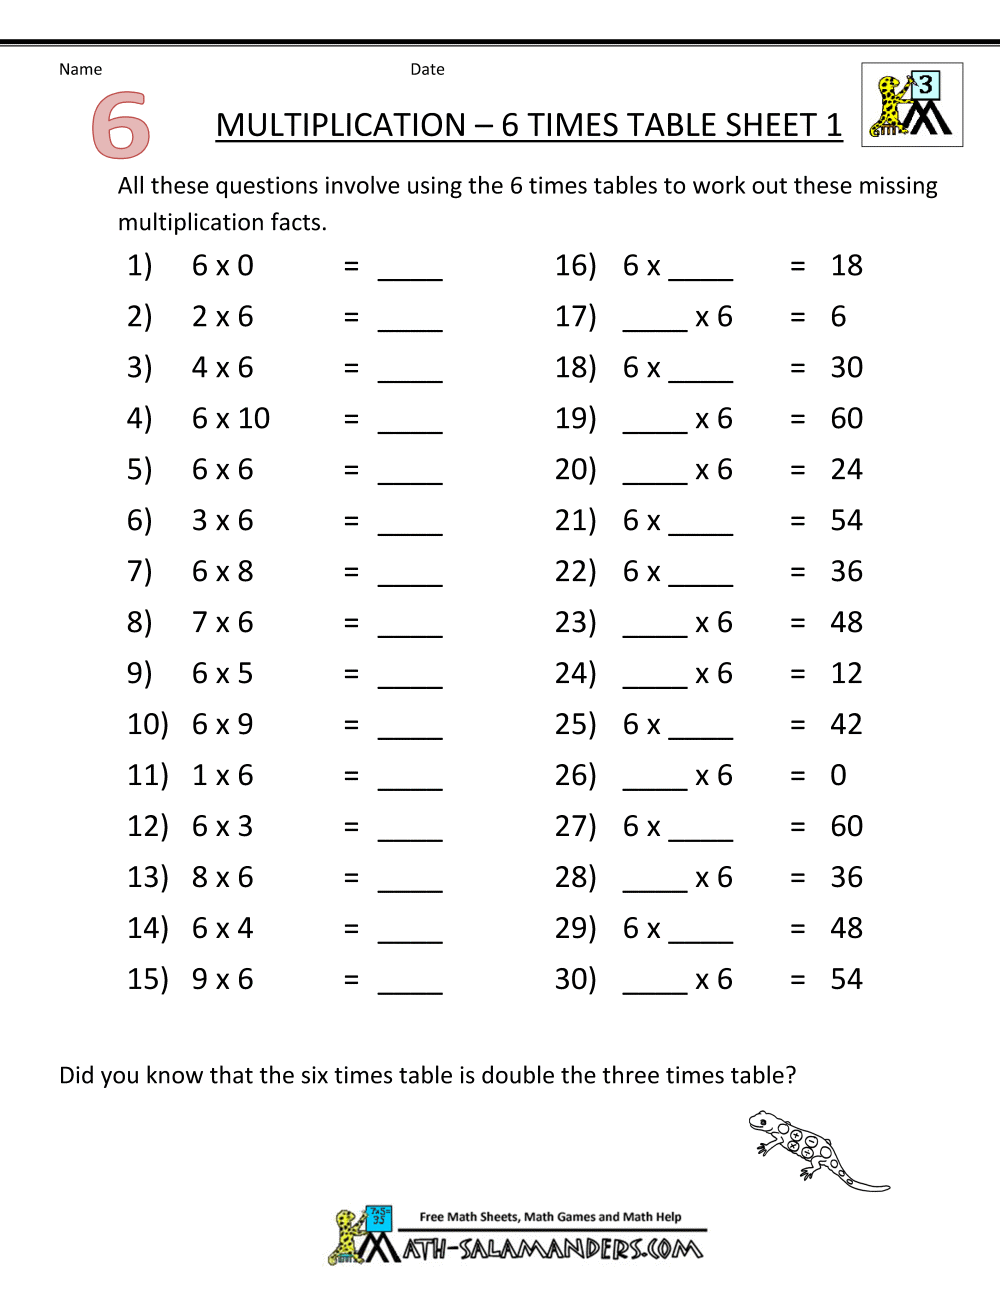 6 Times Table Worksheet Printable